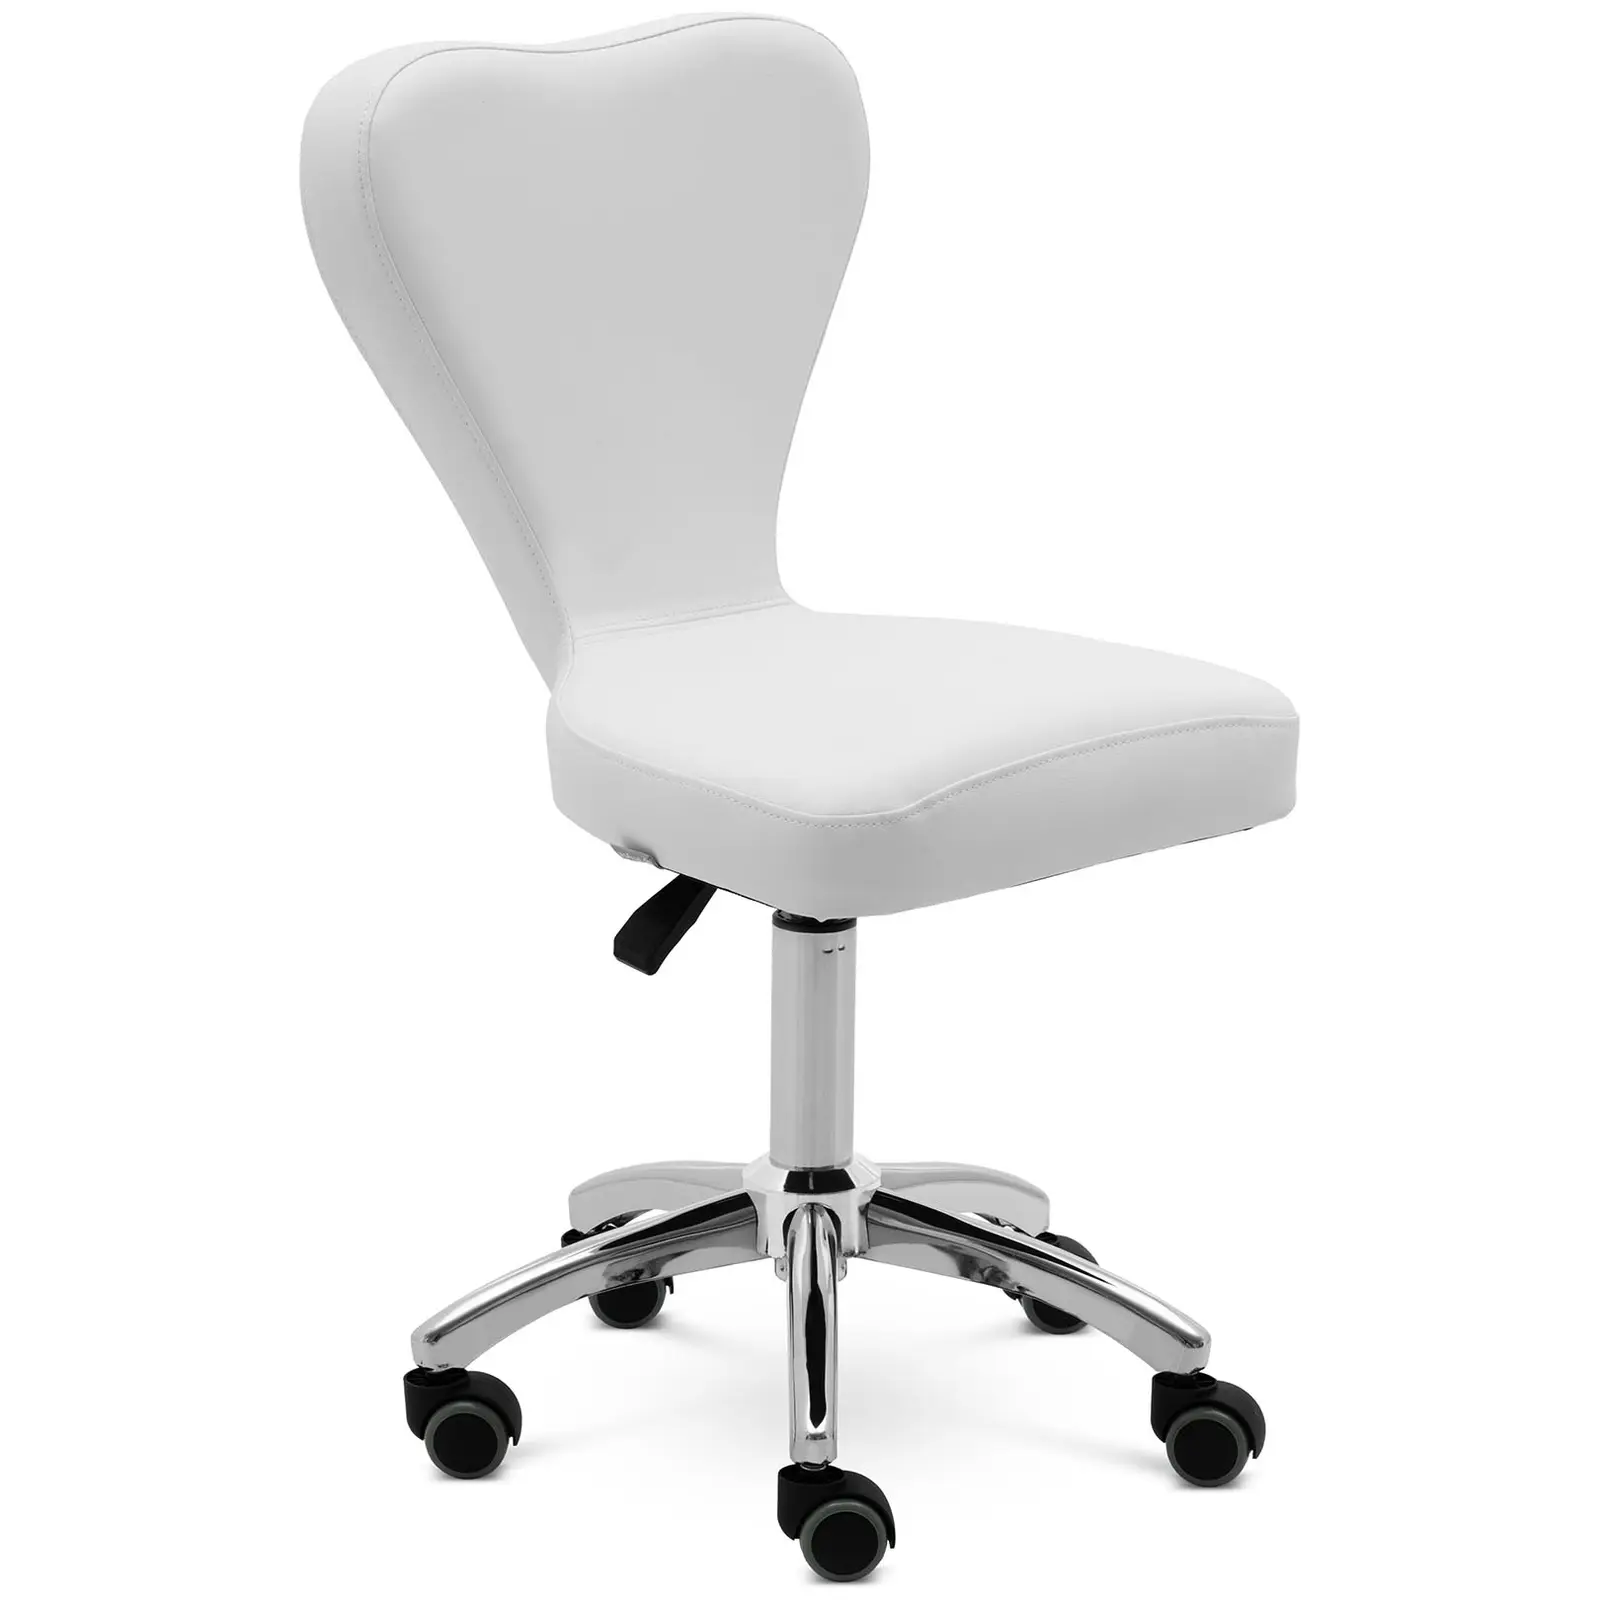 Otočná židle na kolečkách s opěradlem - 49–63 cm - 150 kg - bílá